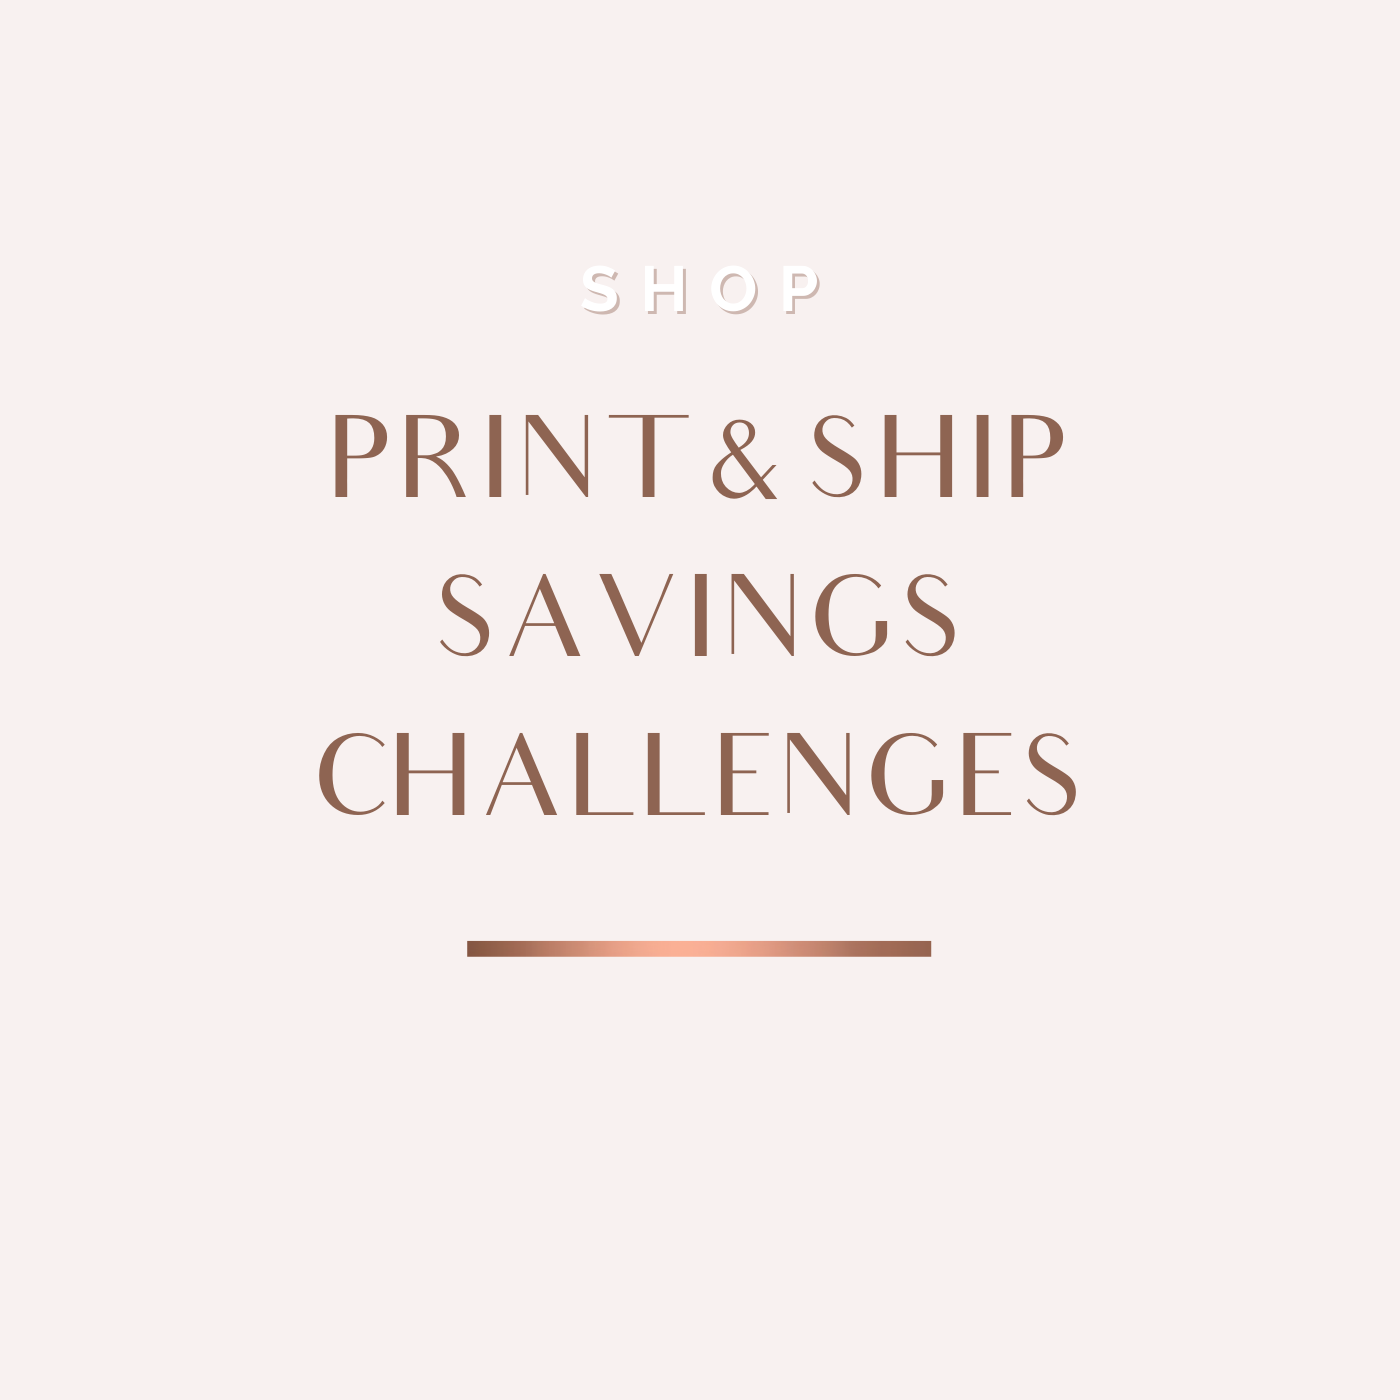 Print & Ship Savings Challenges